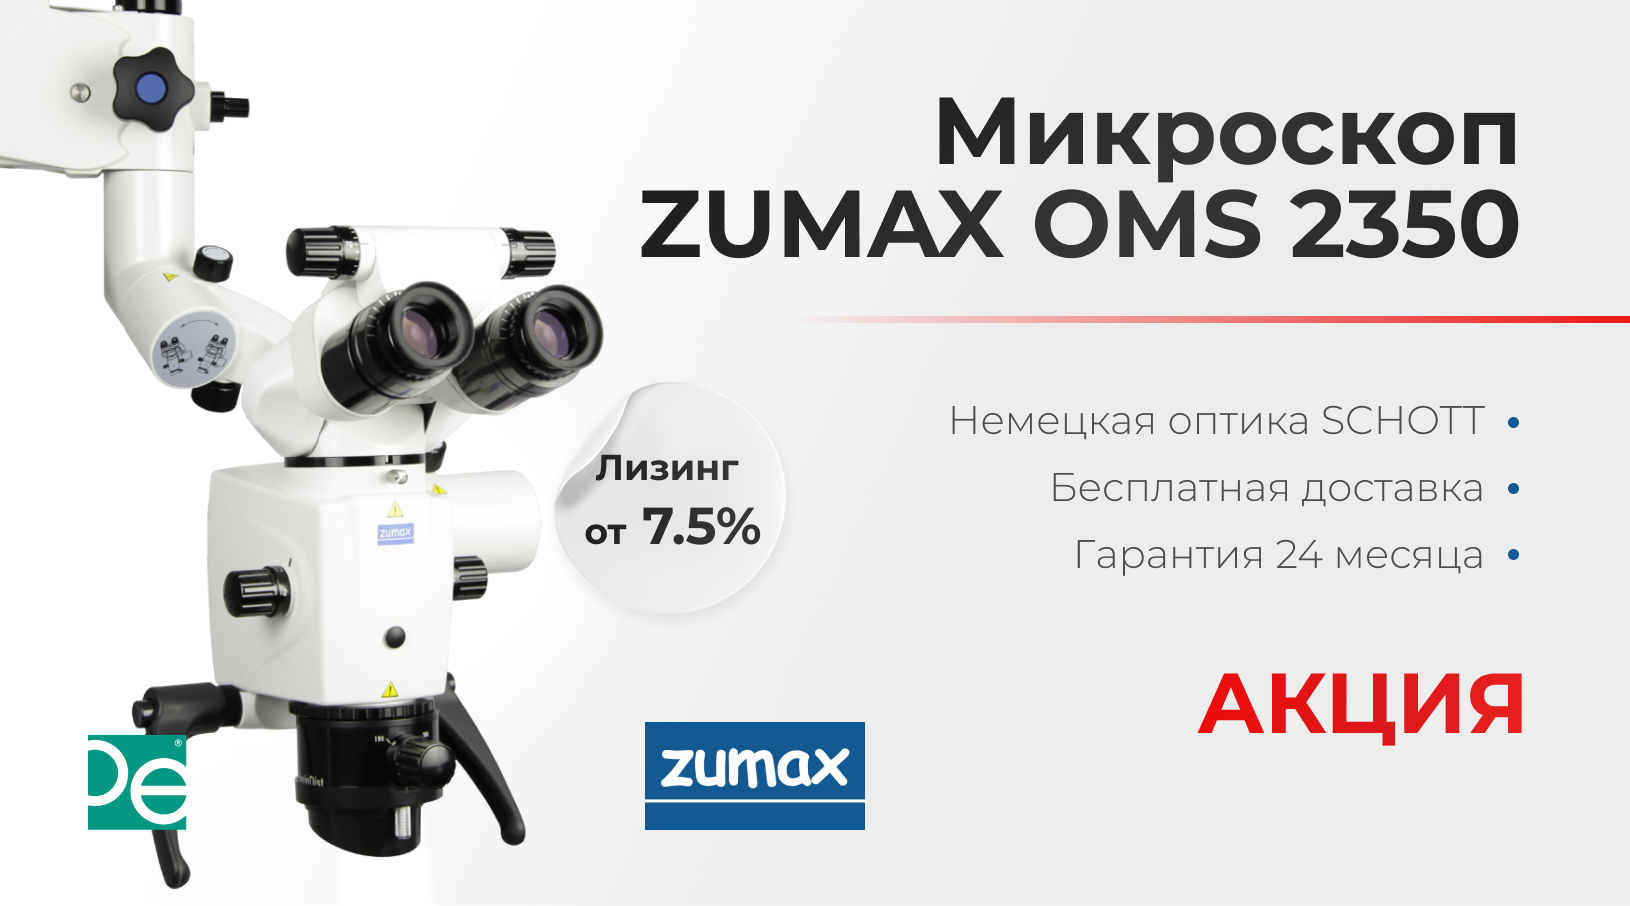 Уникальное предложение на микроскоп Zumax OMS 2350